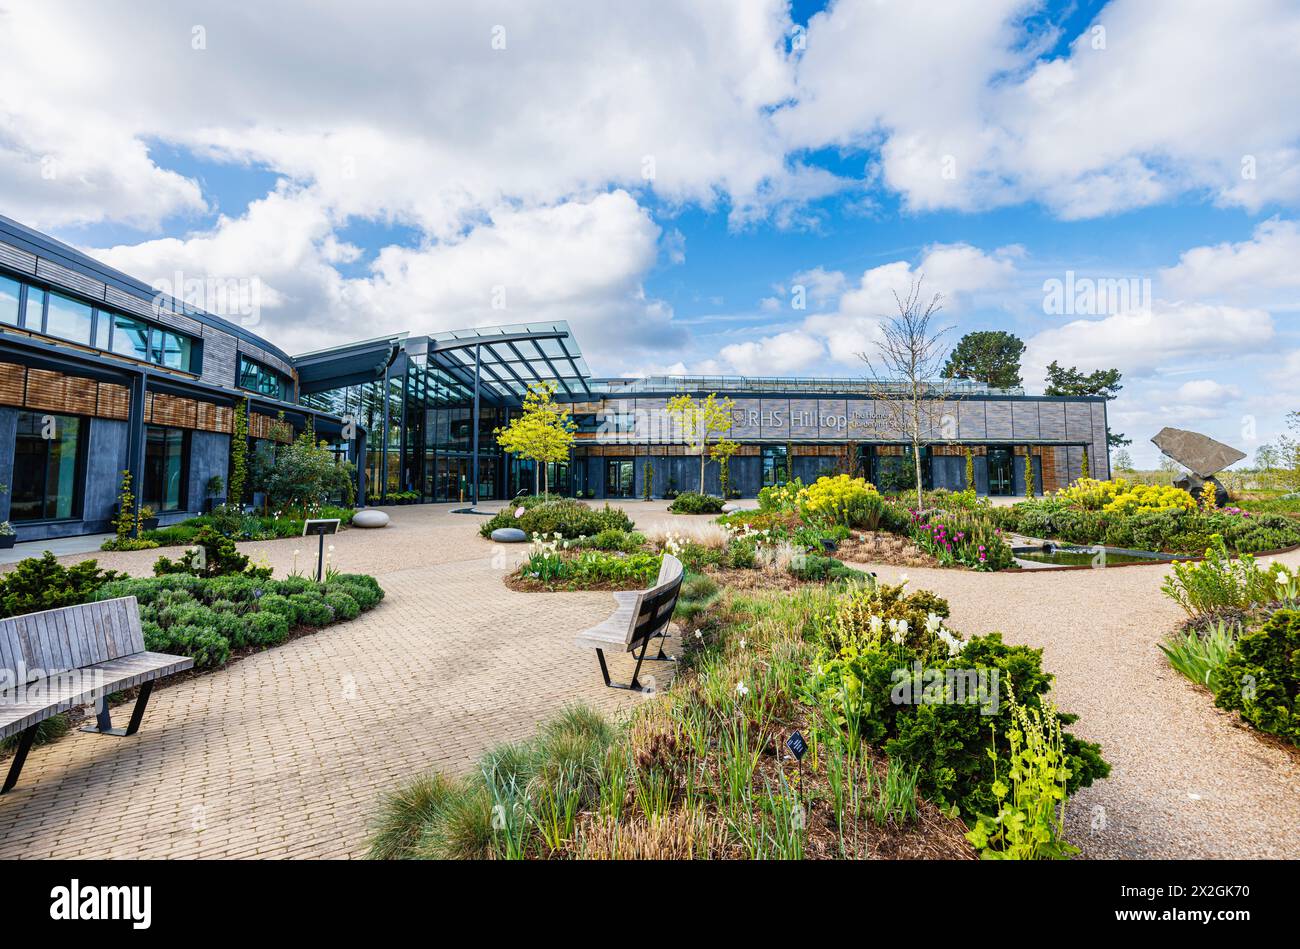 RHS Hilltop et son nom et logo 'The Home of Gardening Science' au RHS Garden, Wisley, Surrey, au sud-est de l'Angleterre au printemps Banque D'Images